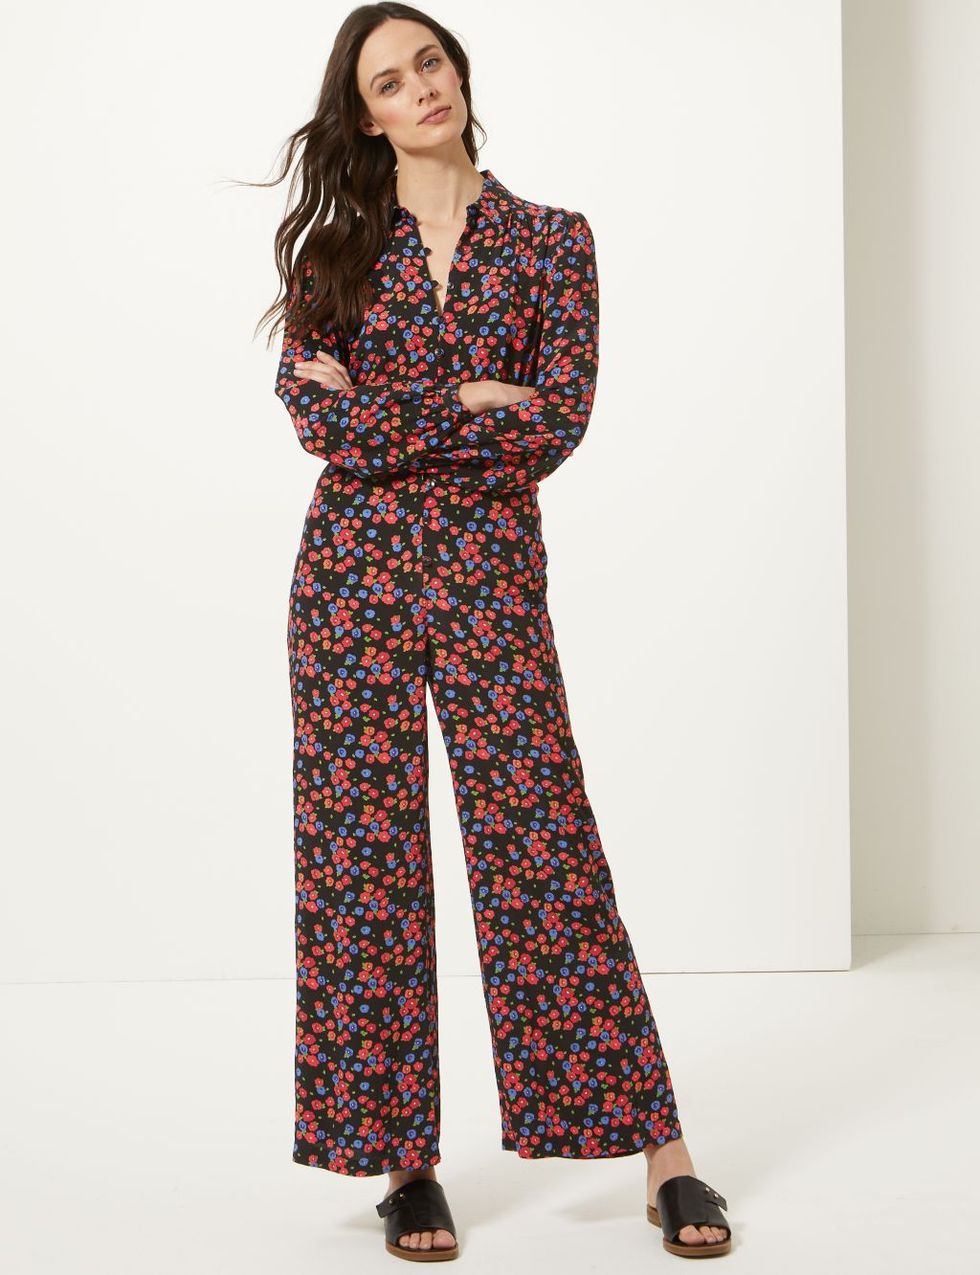 Marks & Spencer releases statement floral jumpsuit for spring